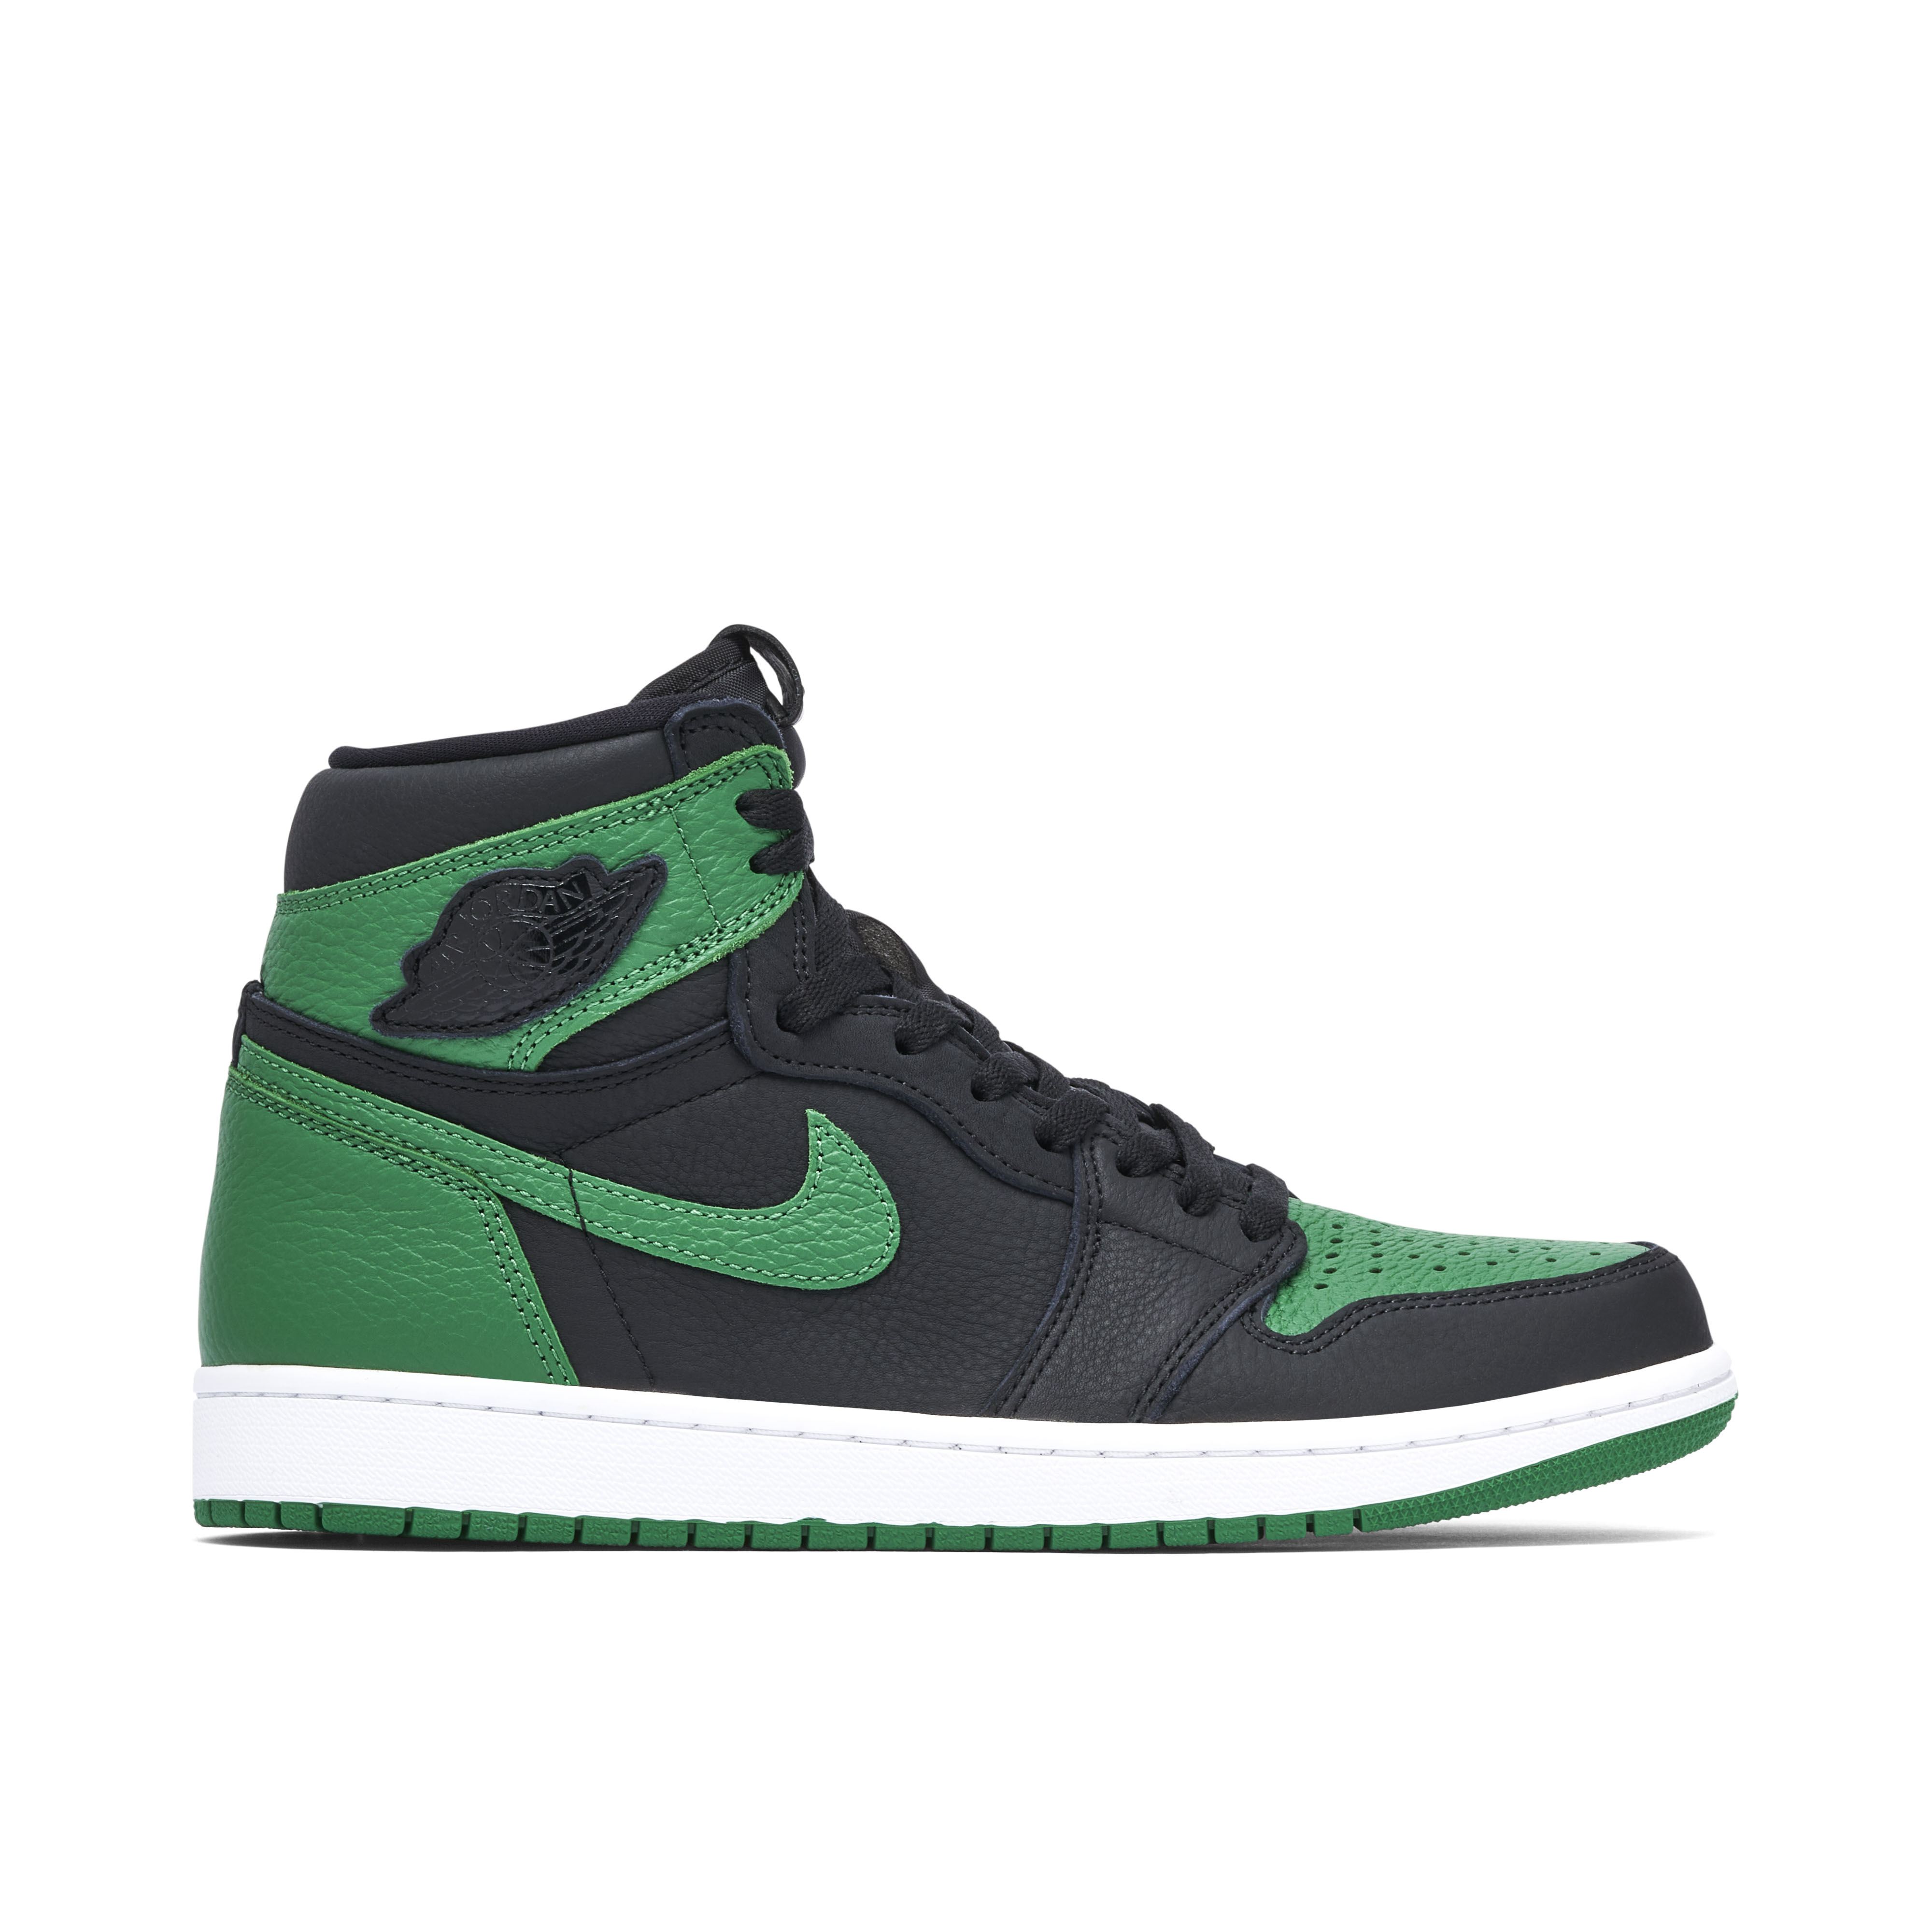 Sneakers Release – Jordan 1 Retro High OG “Pine Green”  Black/Pine